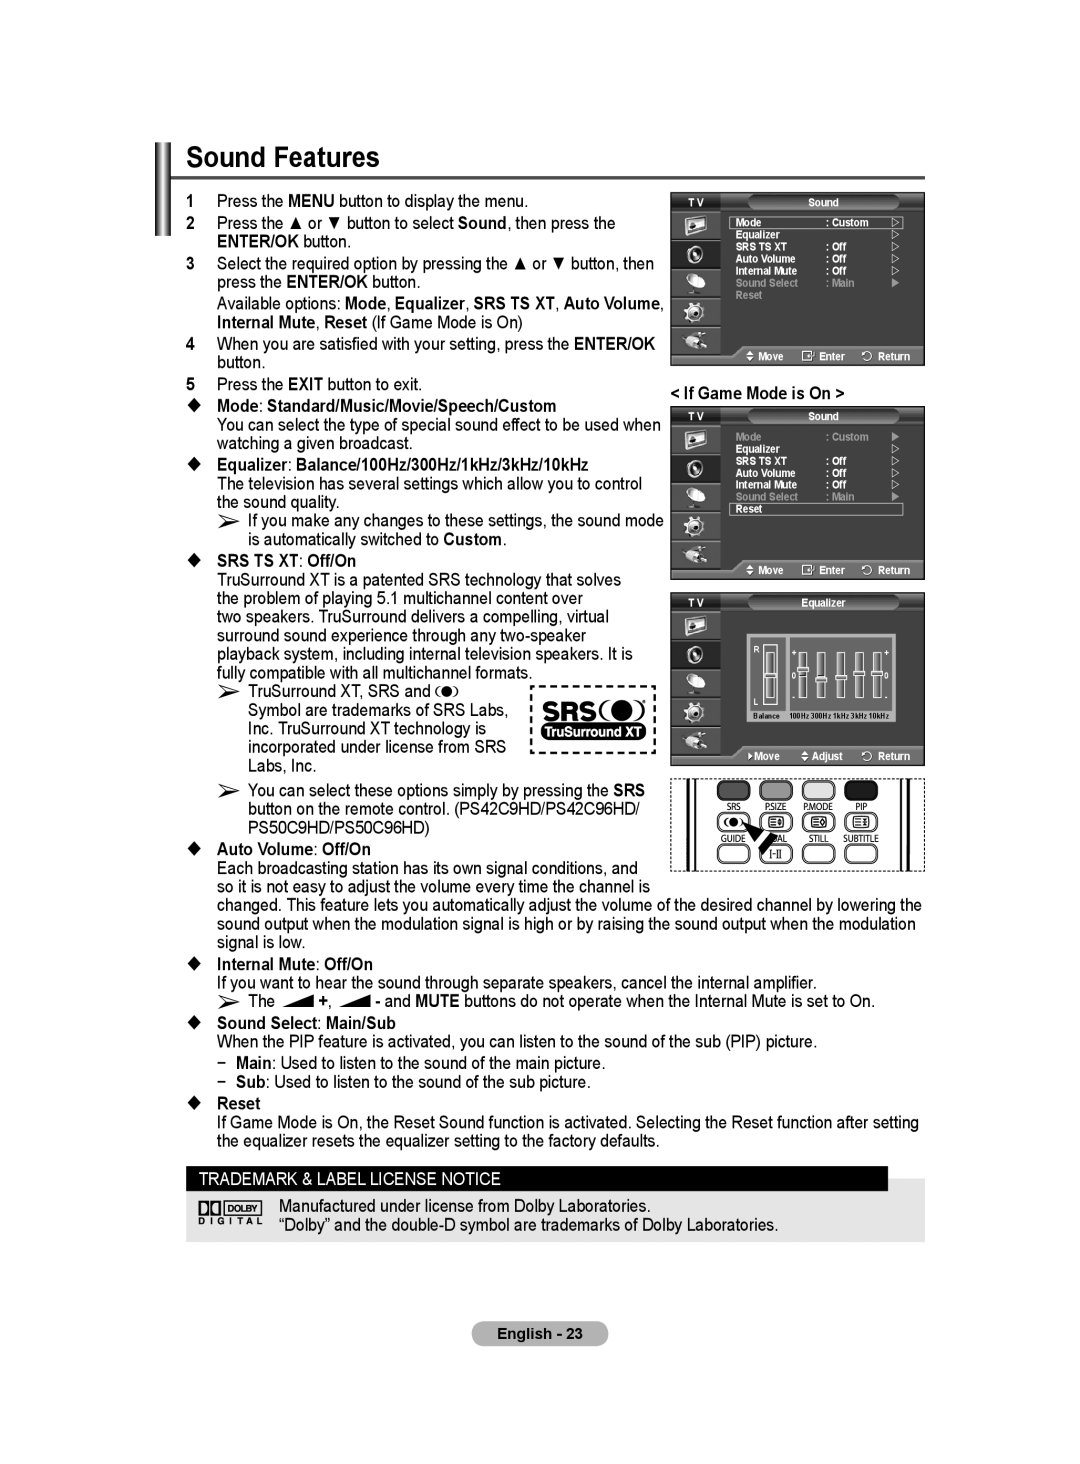 Samsung BN68-01171B-03 manual Sound Features, Mode: Standard/Music/Movie/Speech/Custom, SRS TS XT Off/On, Reset 